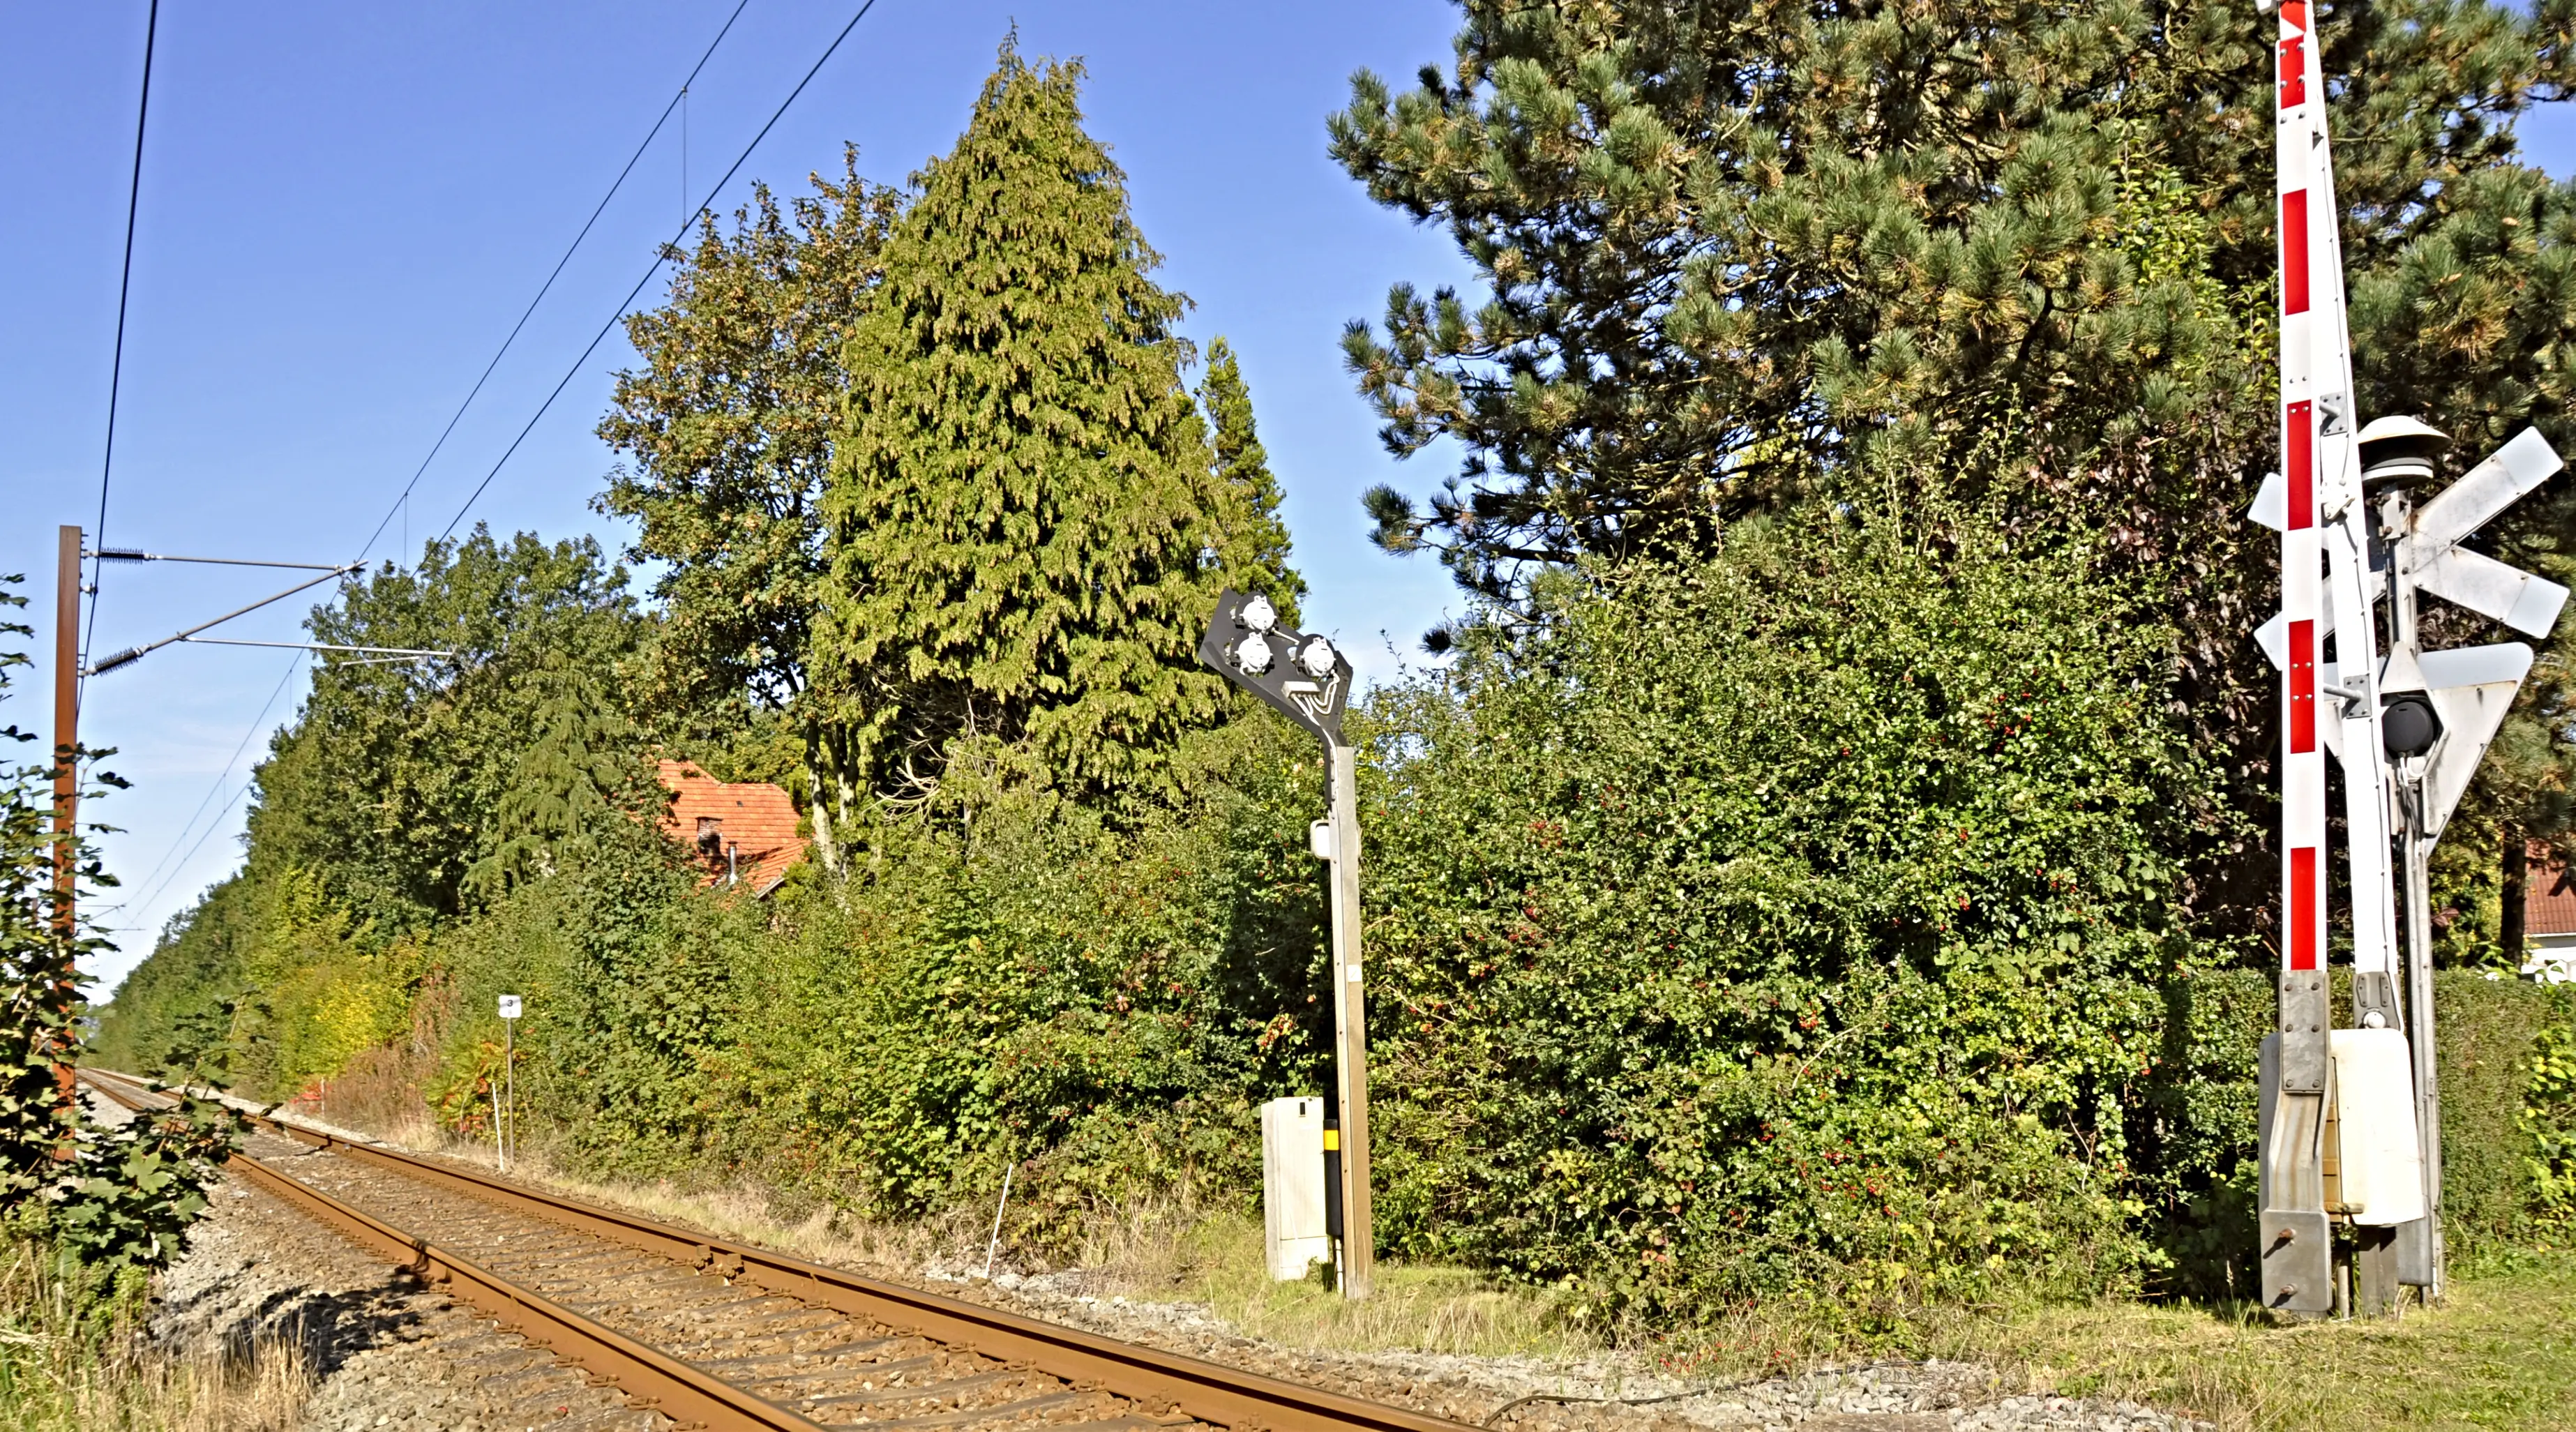 Billede af Ragebøl Station set fra banesiden. Stationen er godt gemt bag træerne.